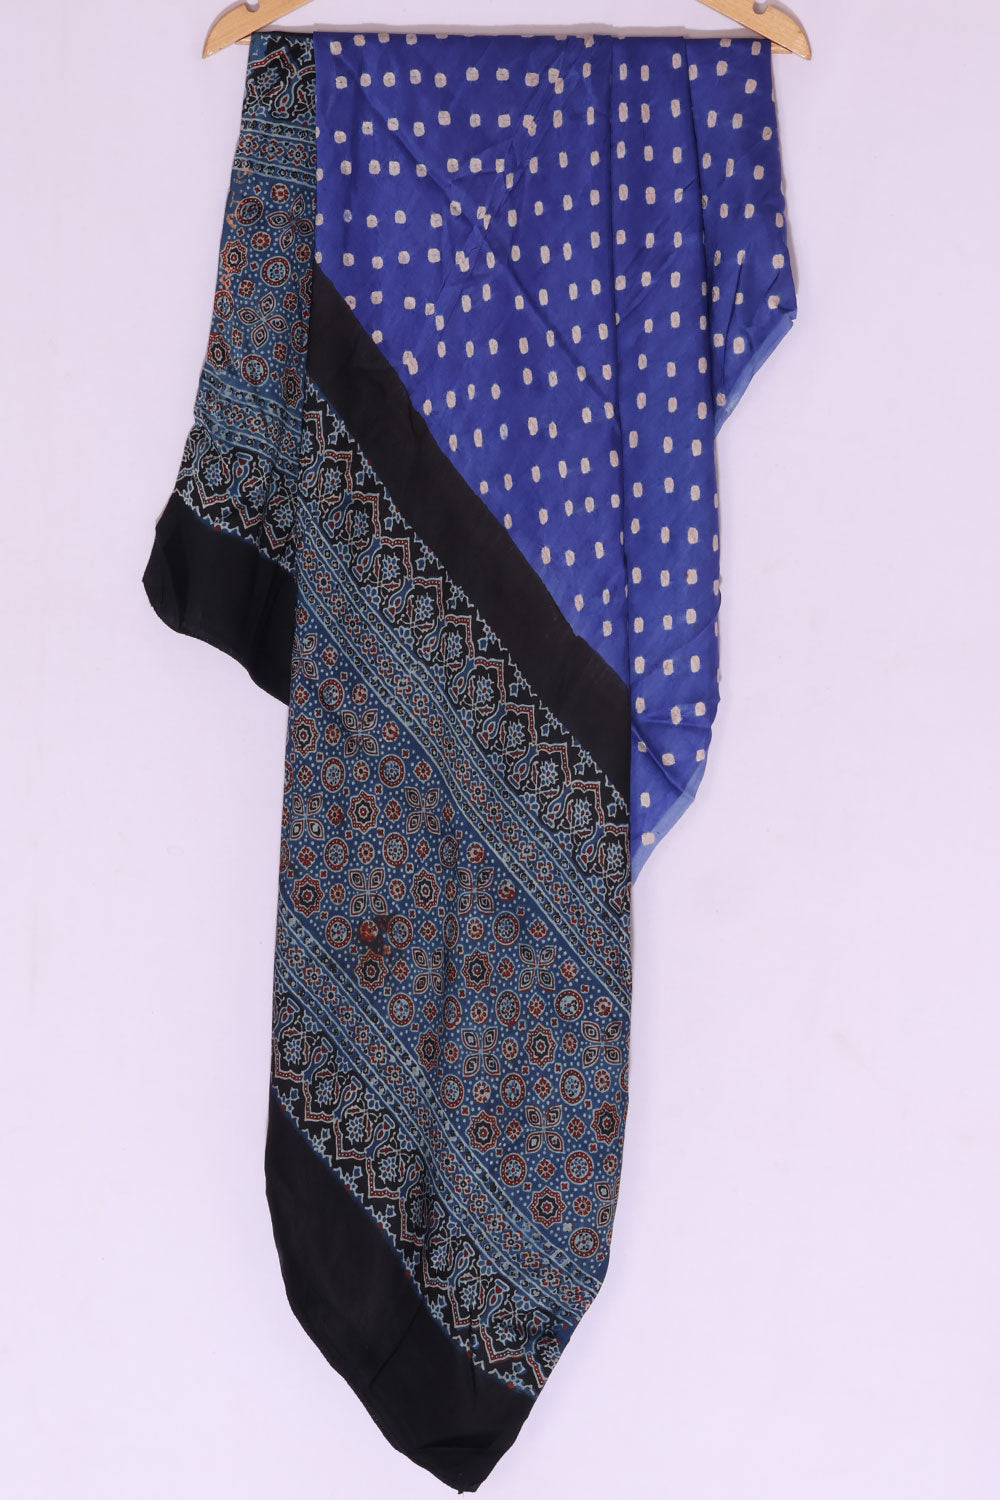 Ajrakh printed Bandhani Dupatta in Modal Silk